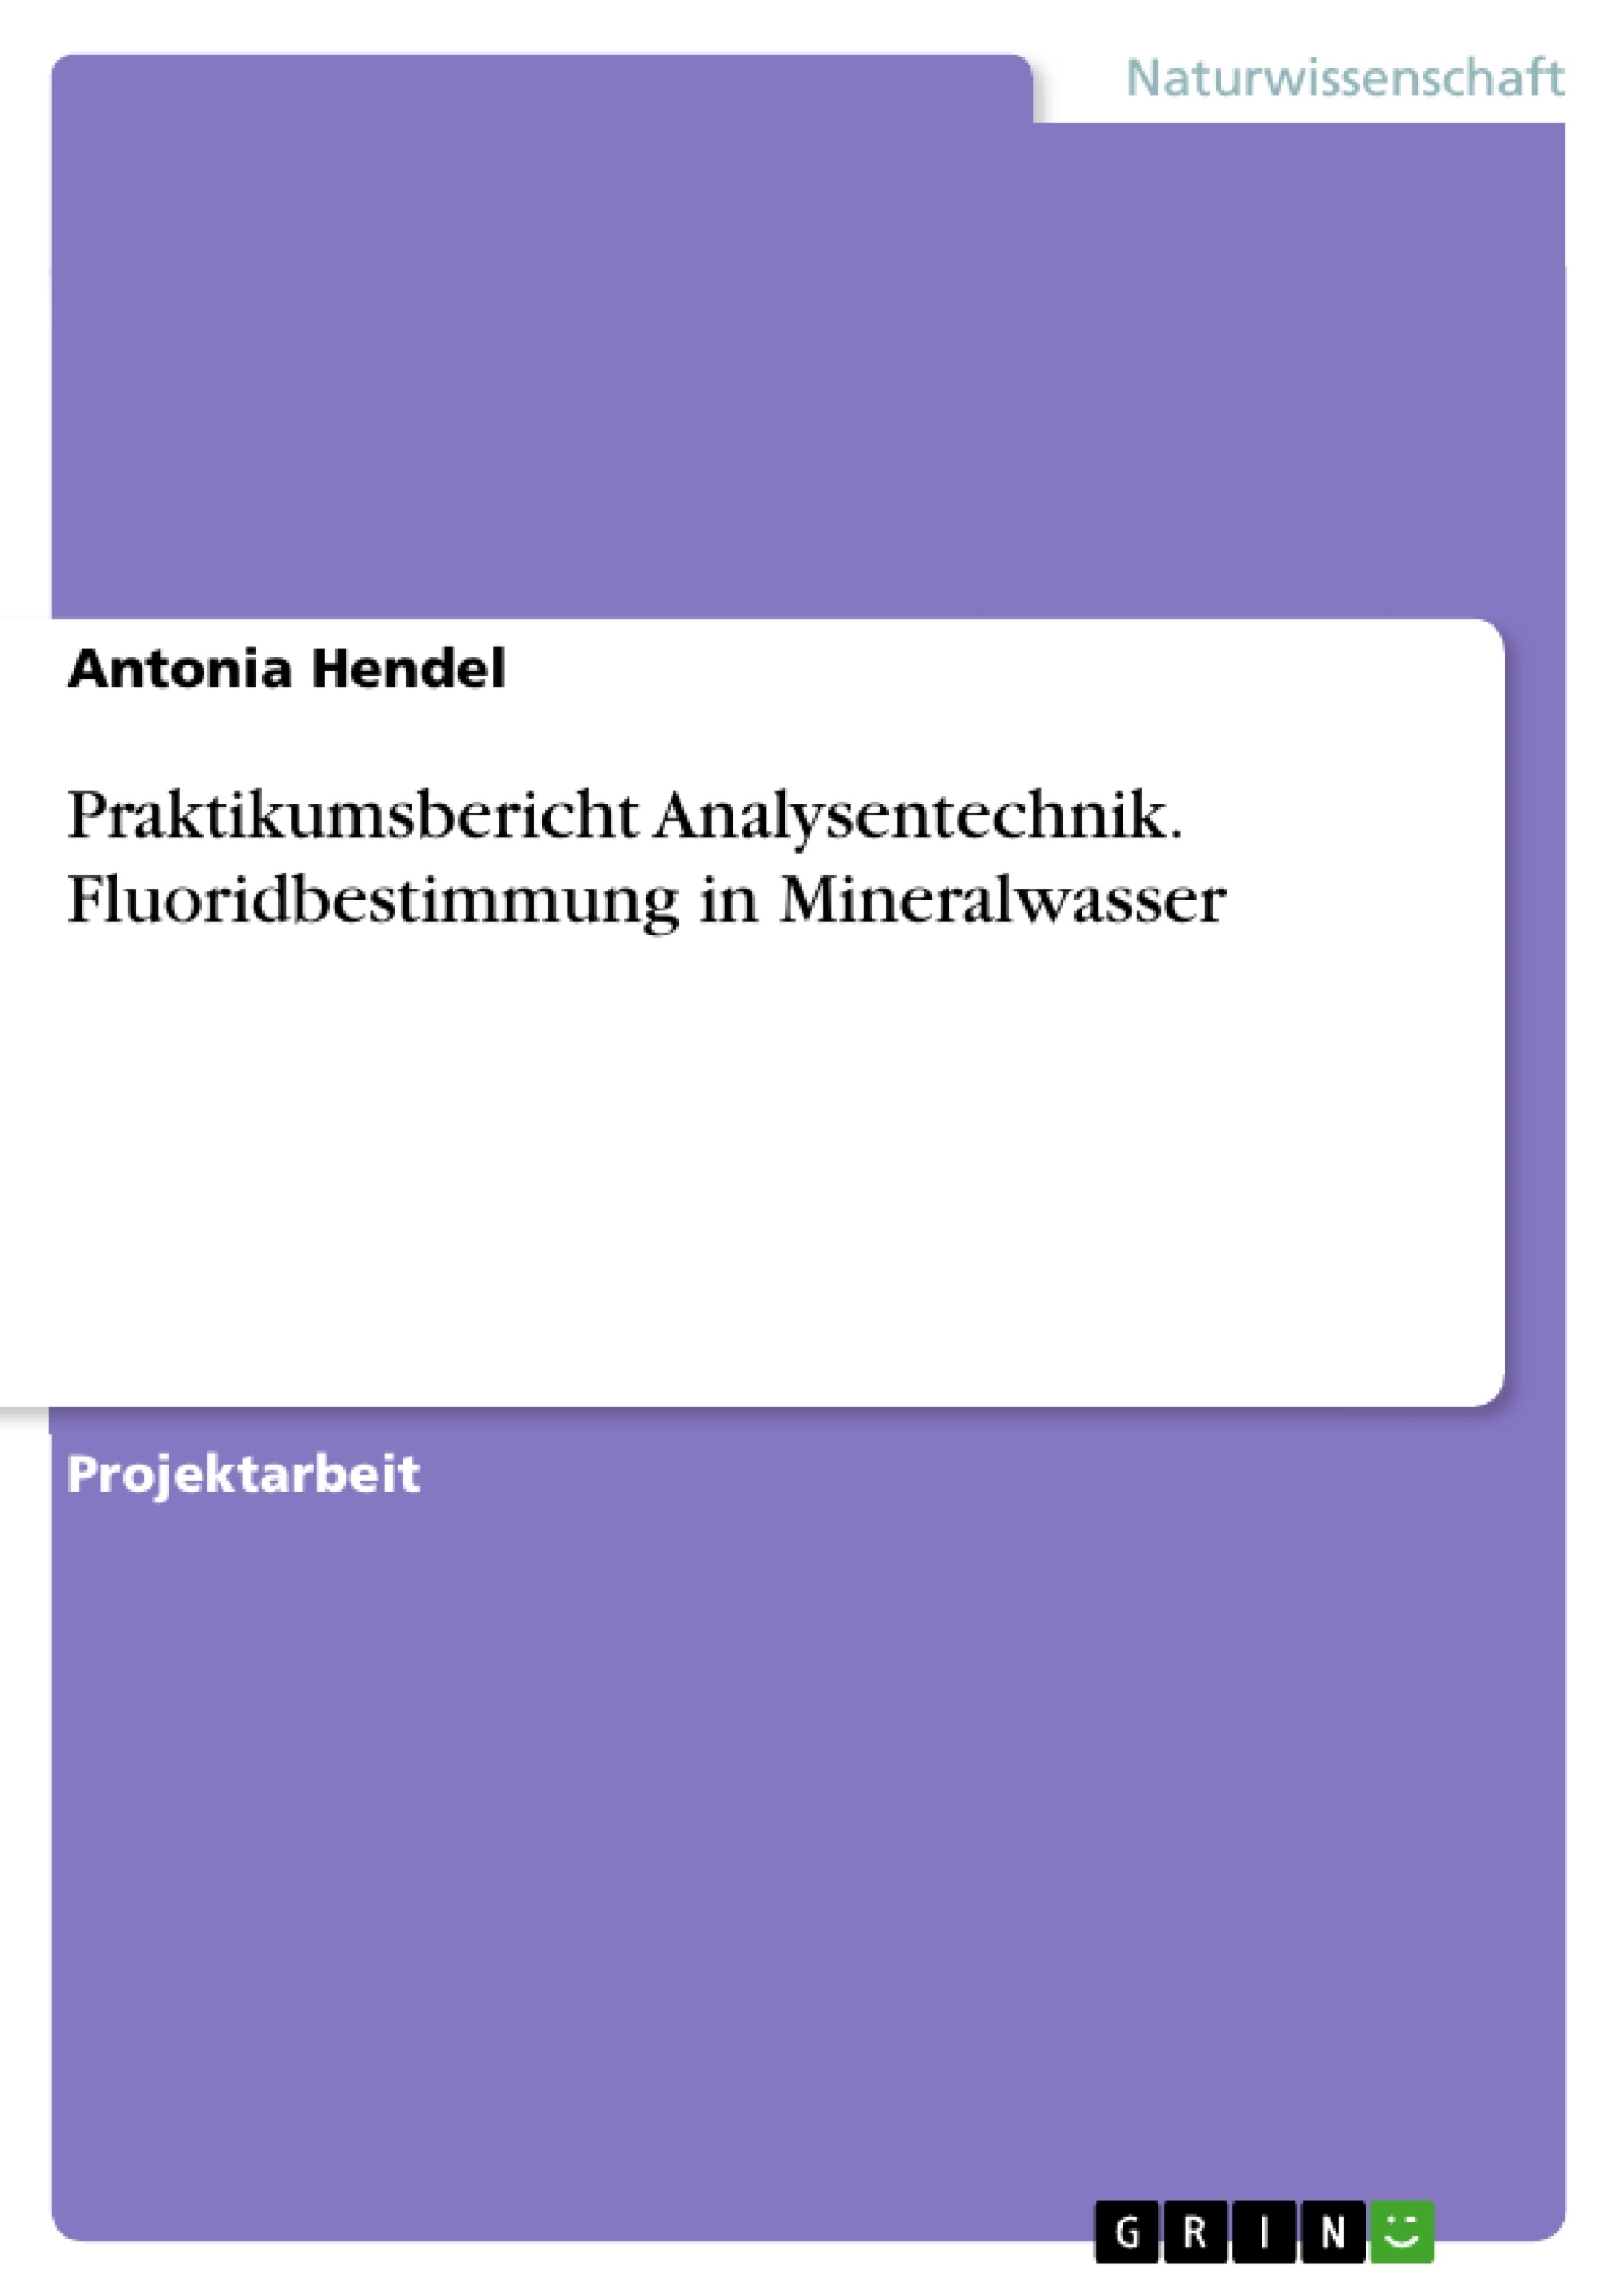 Title: Praktikumsbericht Analysentechnik. Fluoridbestimmung in Mineralwasser